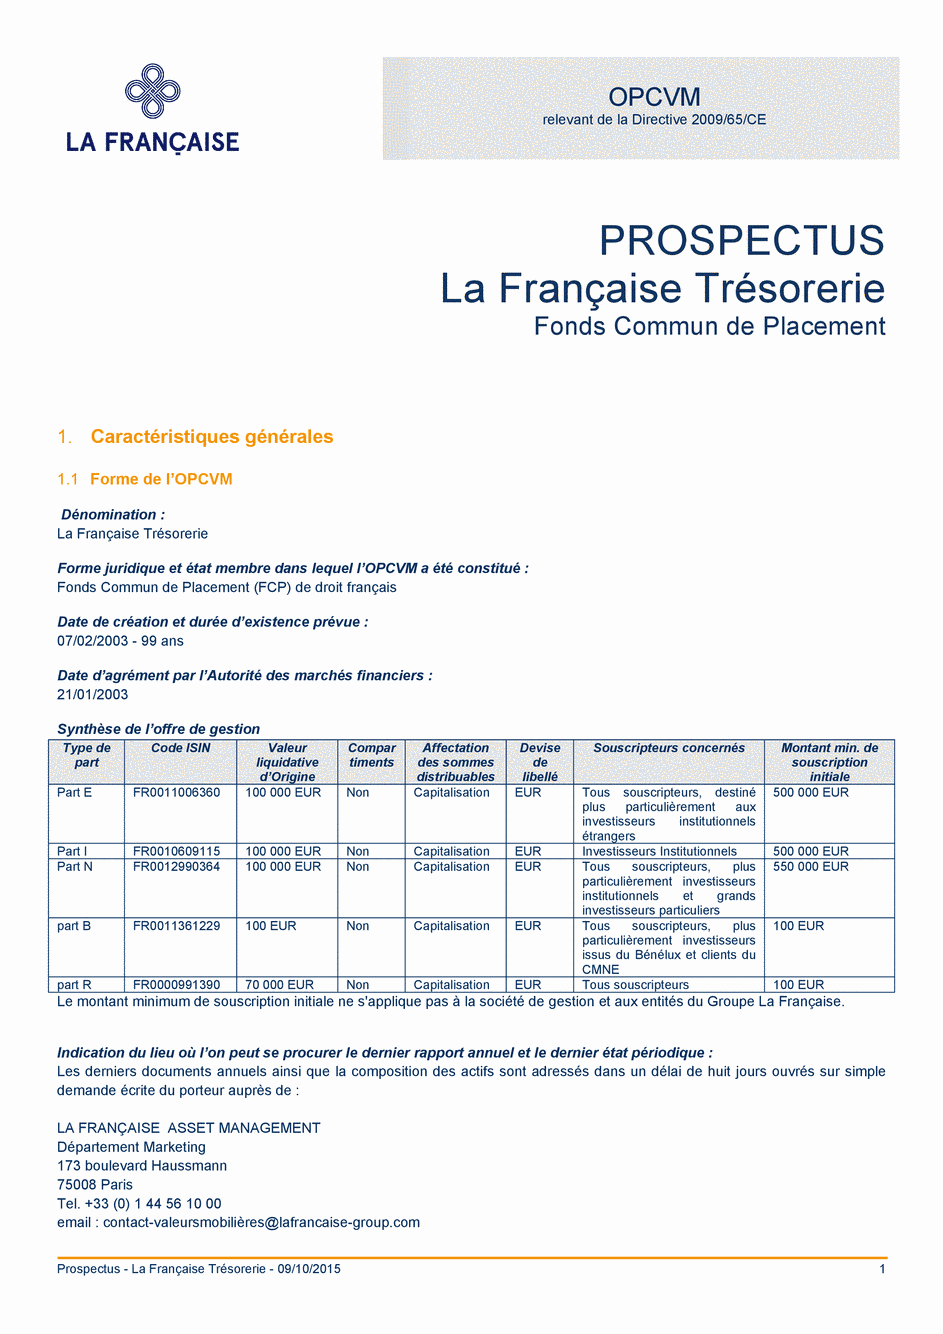 Prospectus La Française Trésorerie - Part E - 09/10/2015 - Français